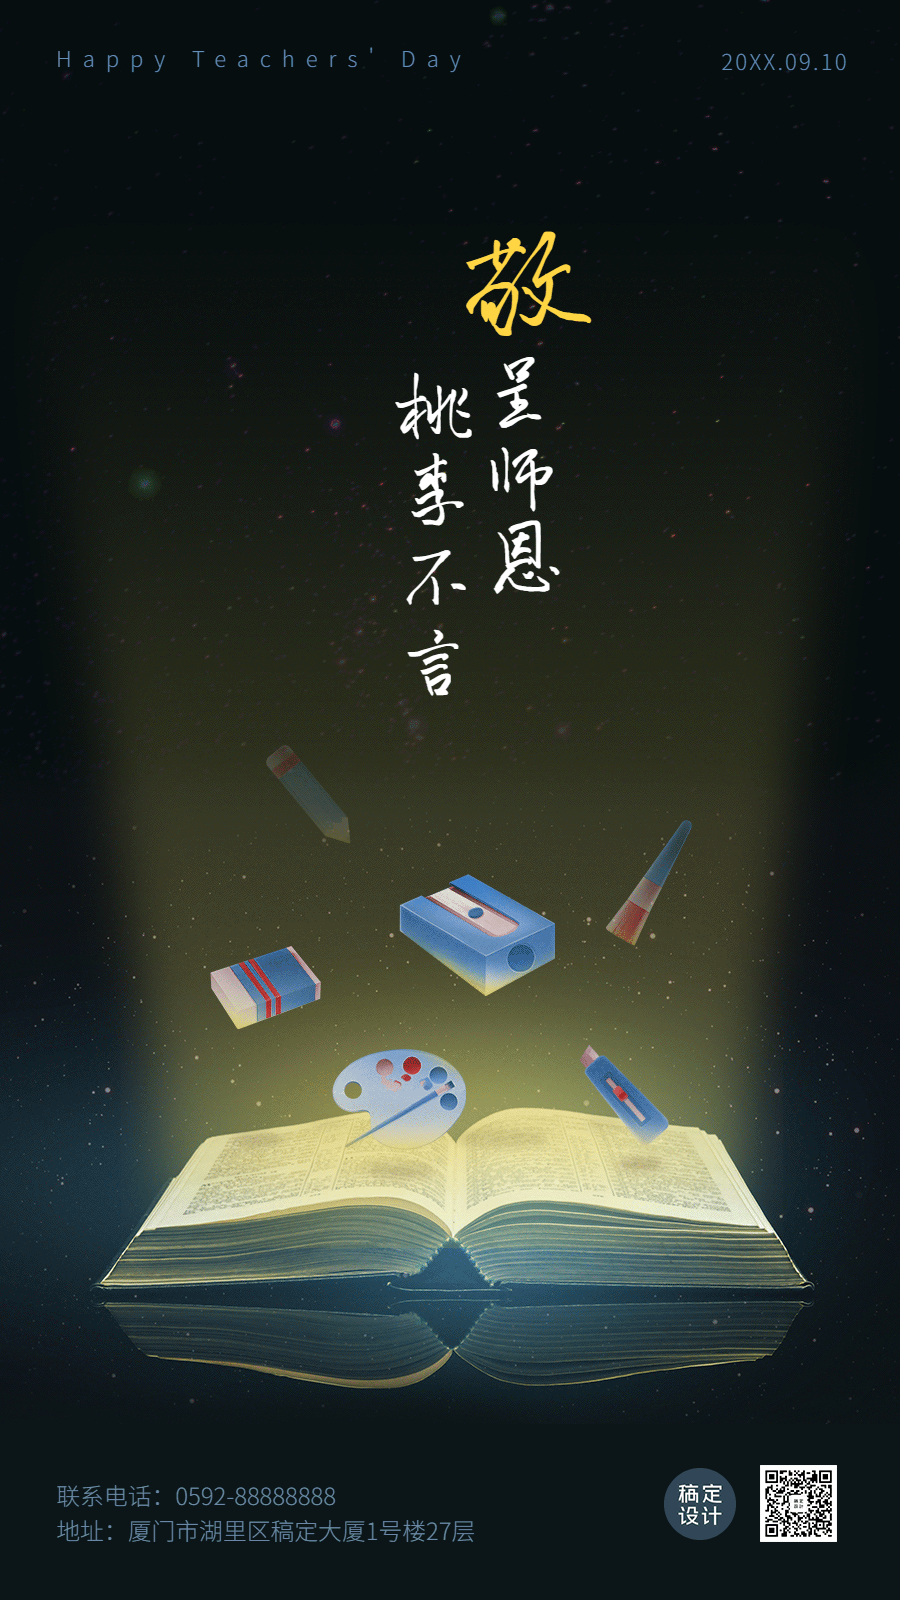 教师节祝福贺卡GIF动图手机海报